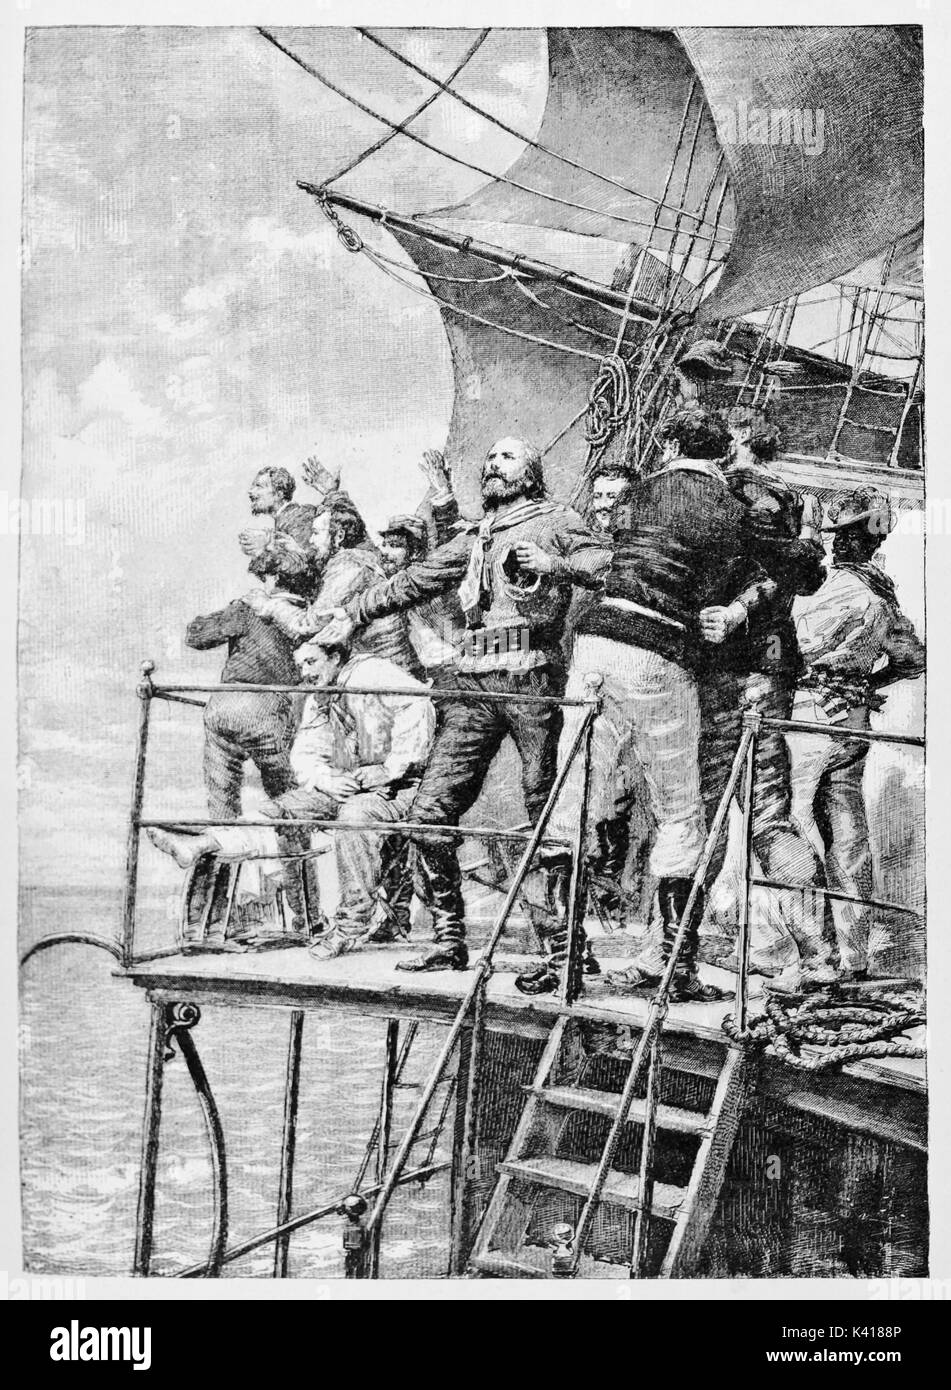 Détail de Garibaldi de regarder le ciel à bord d'un ancien navire avec son équipage. Par E. Matania publié le Garibaldi e i suoi Tempi Milan Italie 1884 Garibaldi à bord Banque D'Images